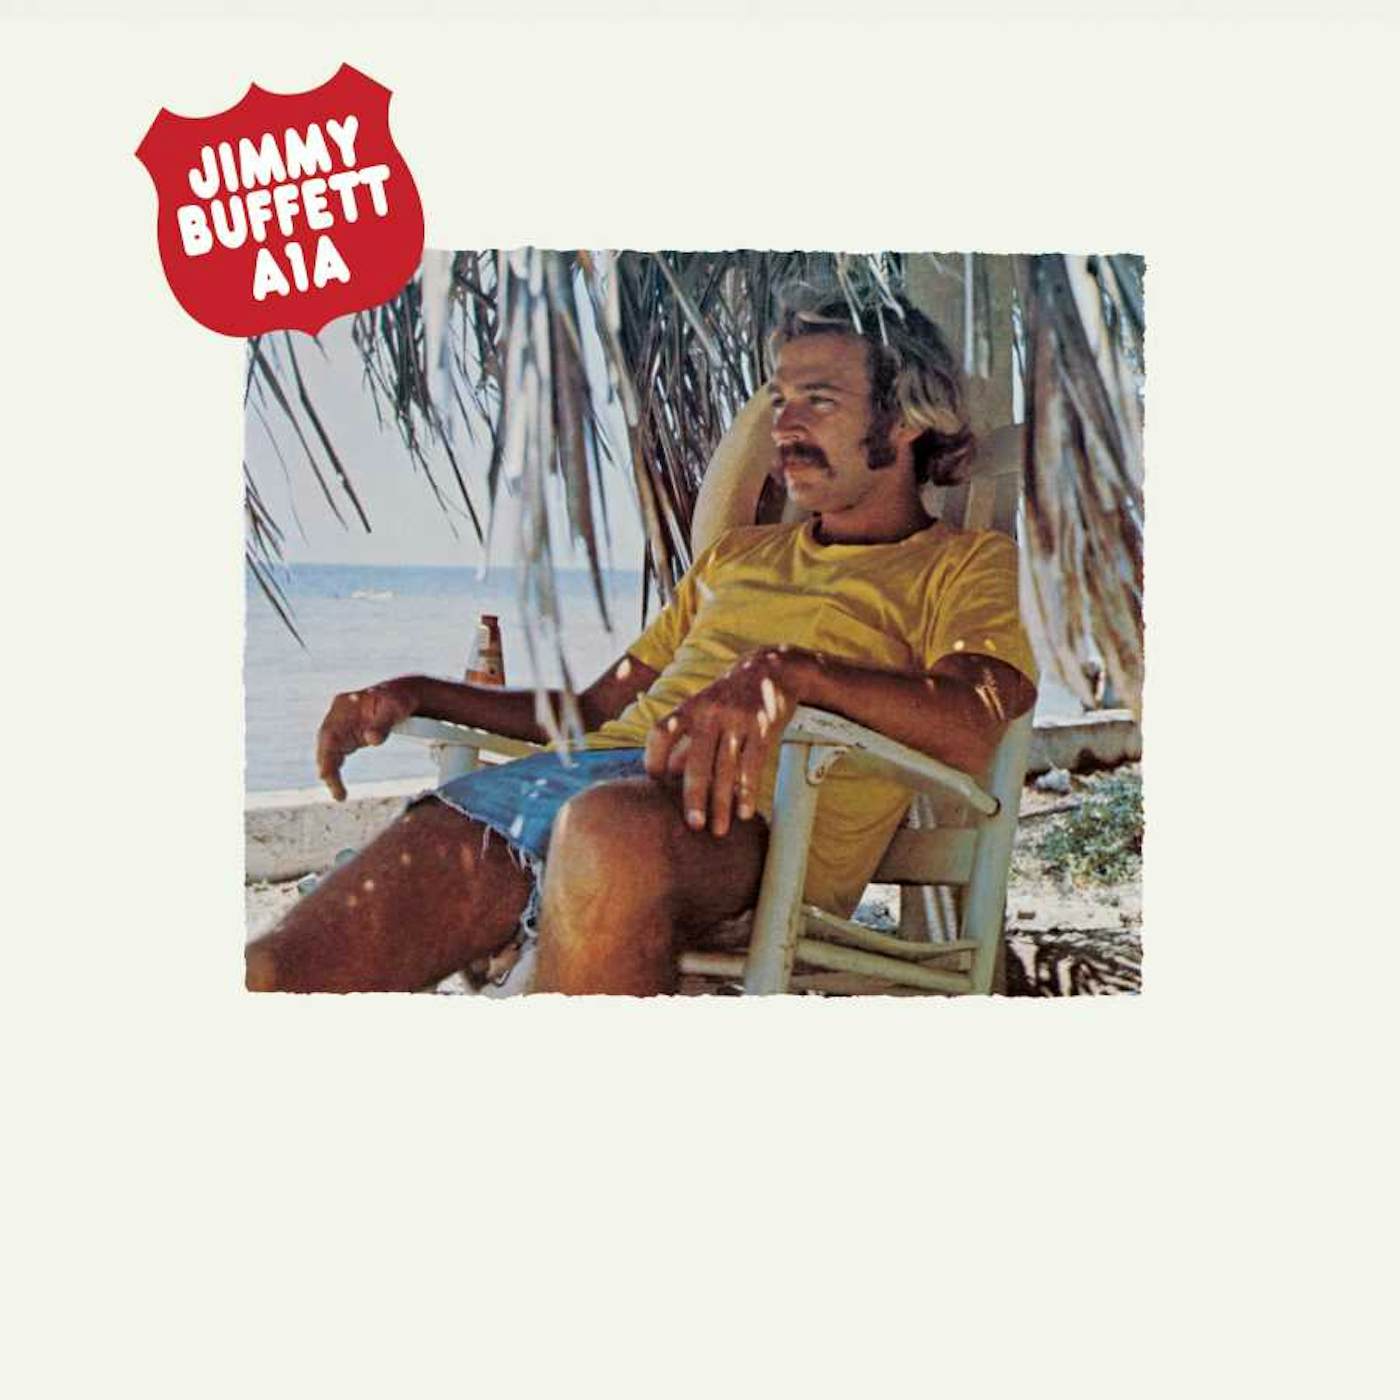 Jimmy Buffett A-1-A Vinyl Record